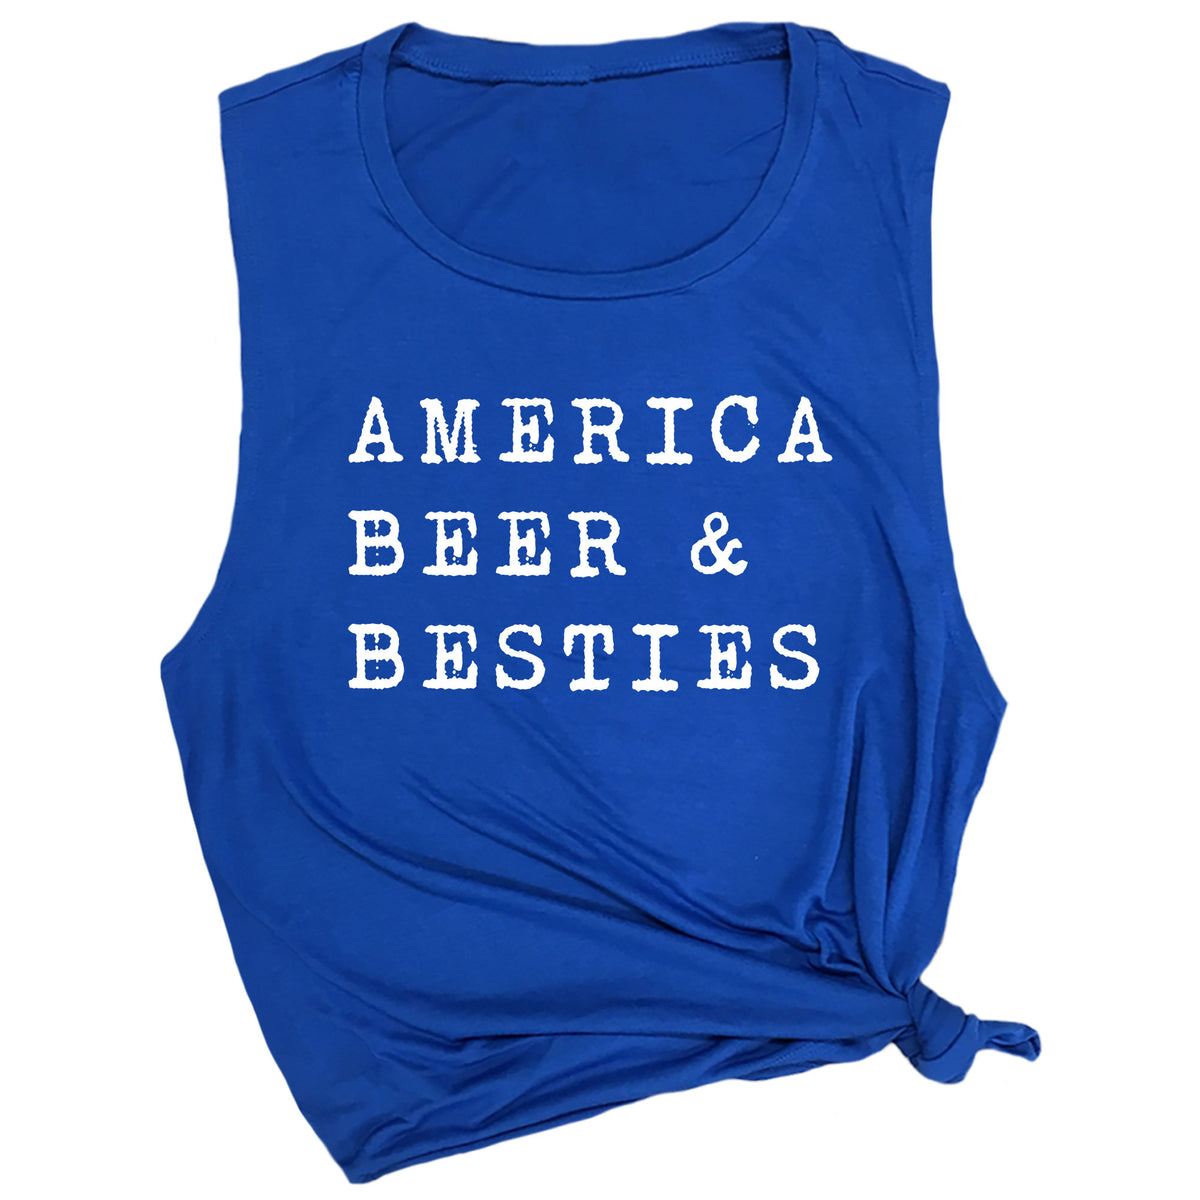 America Beer & Besties Muscle Tee